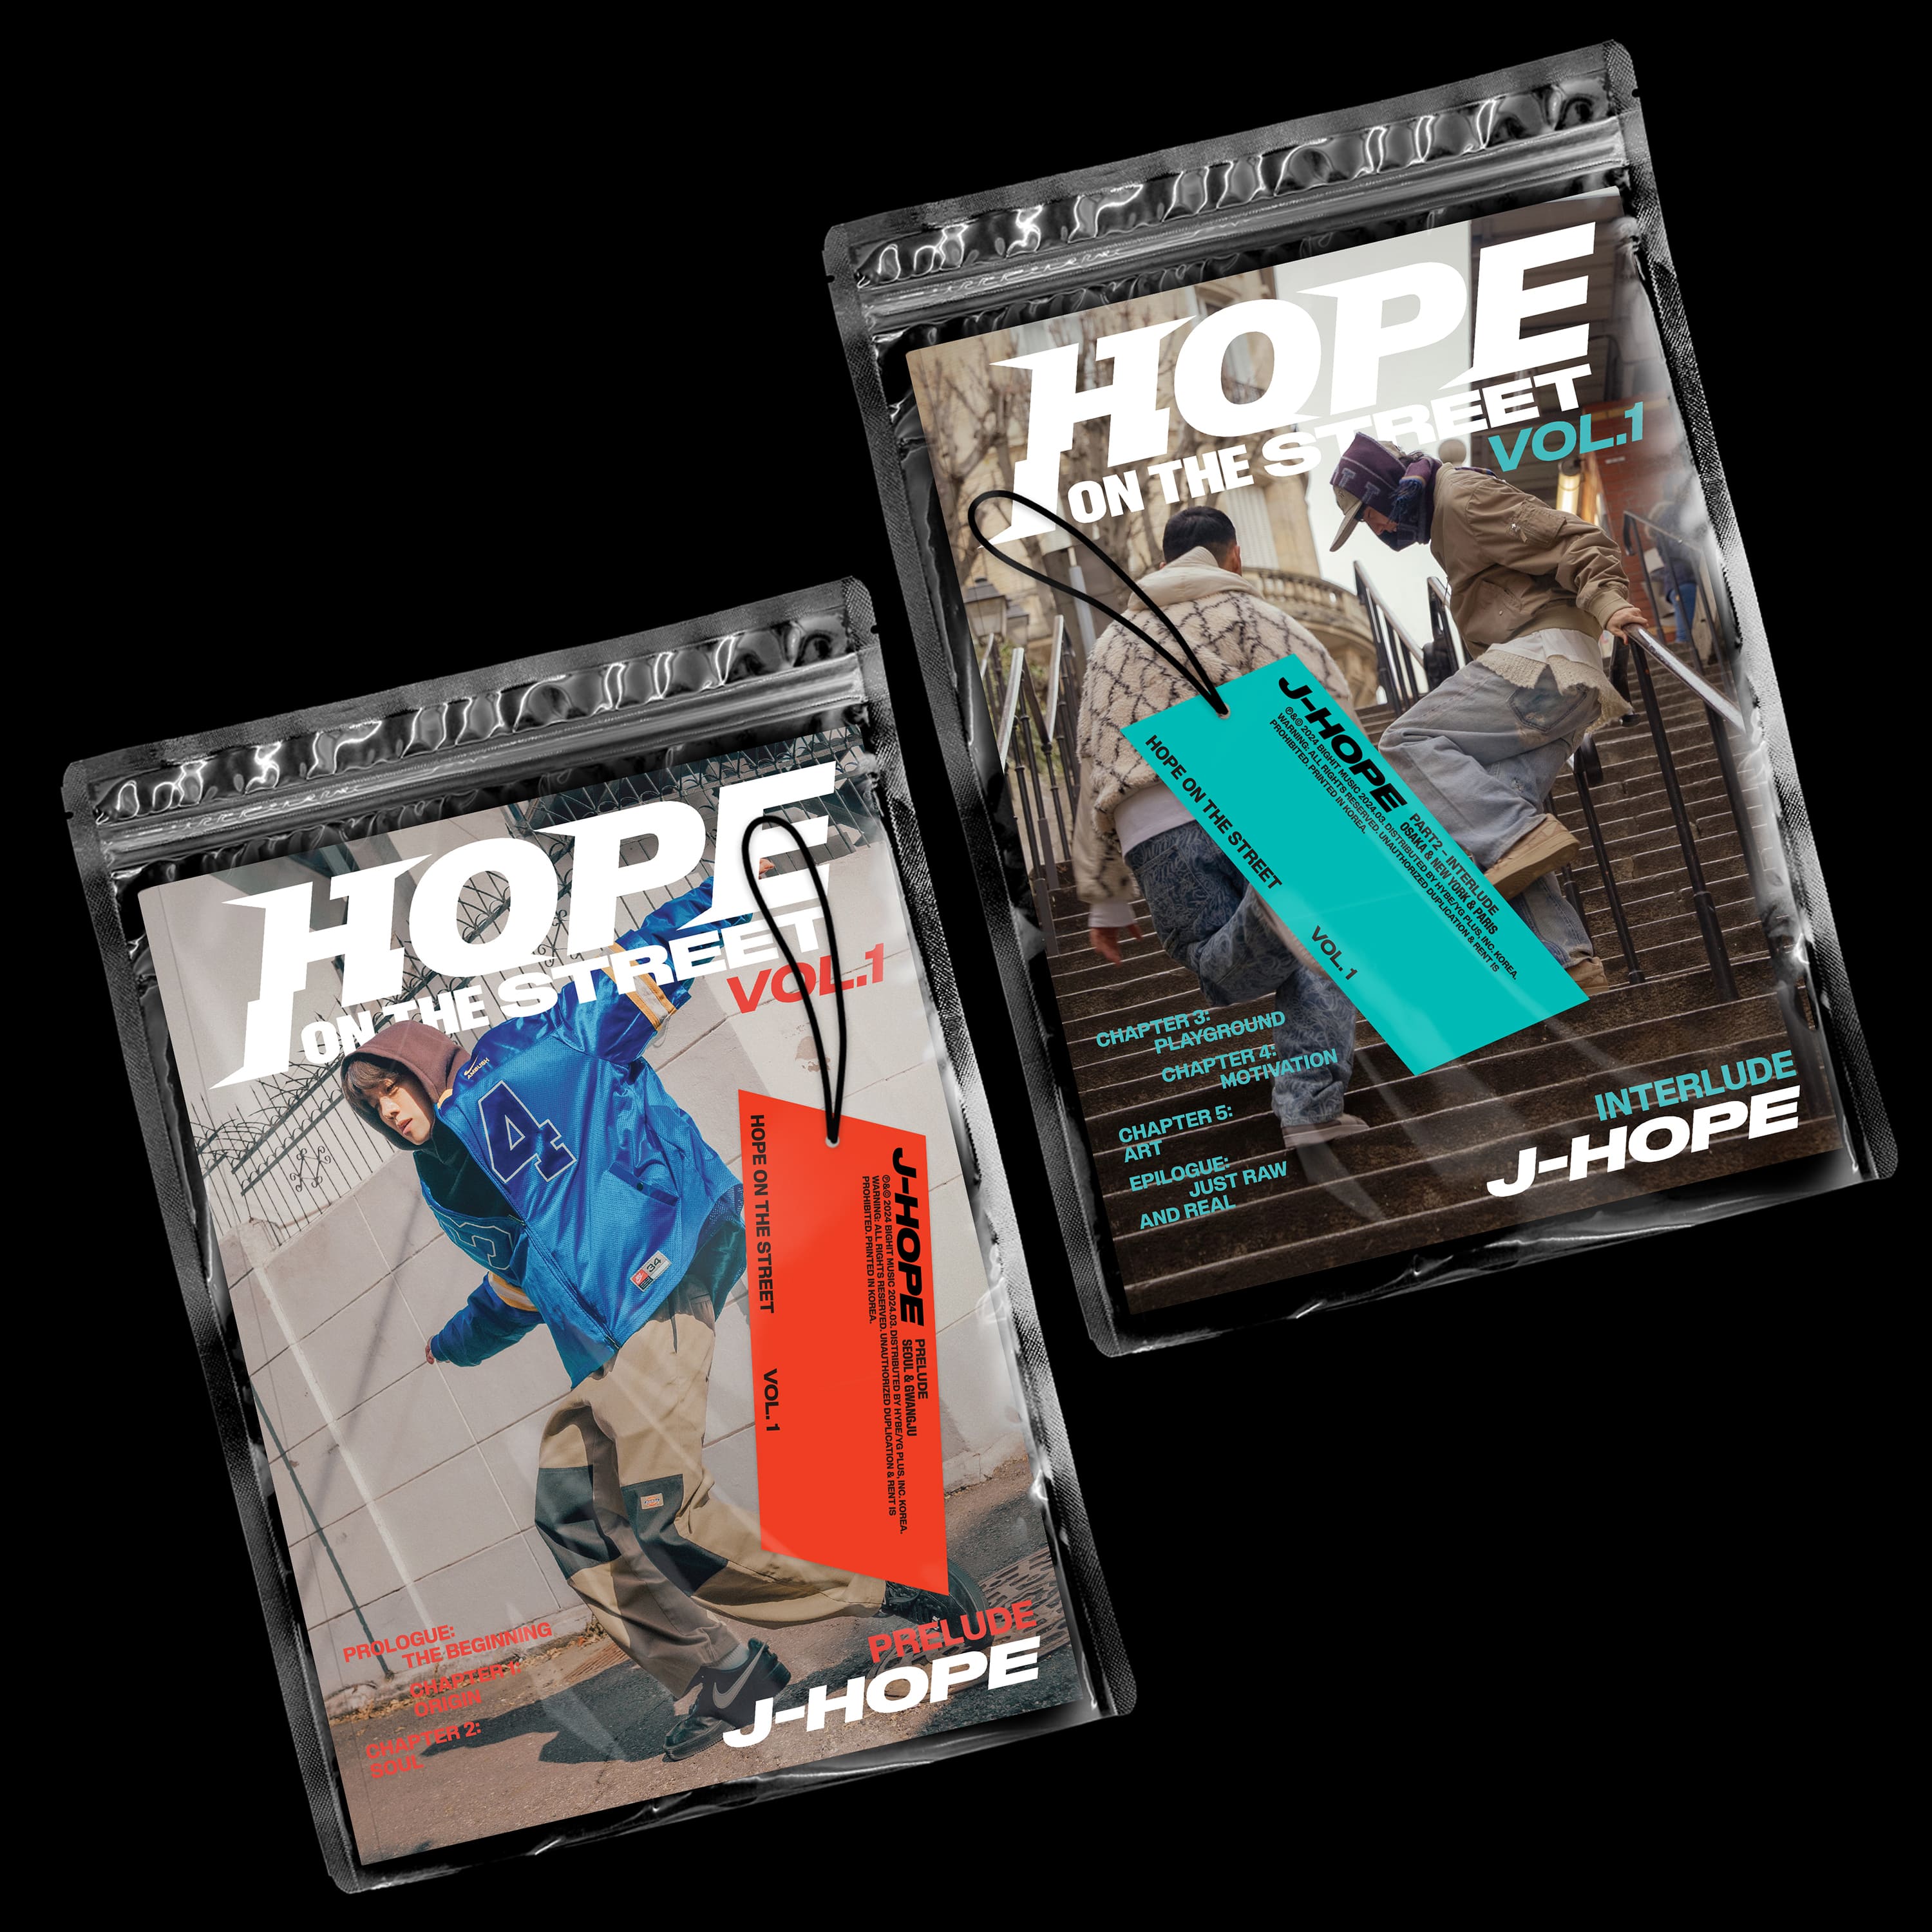 j-hope - [HOPE ON THE STREET VOL.1]